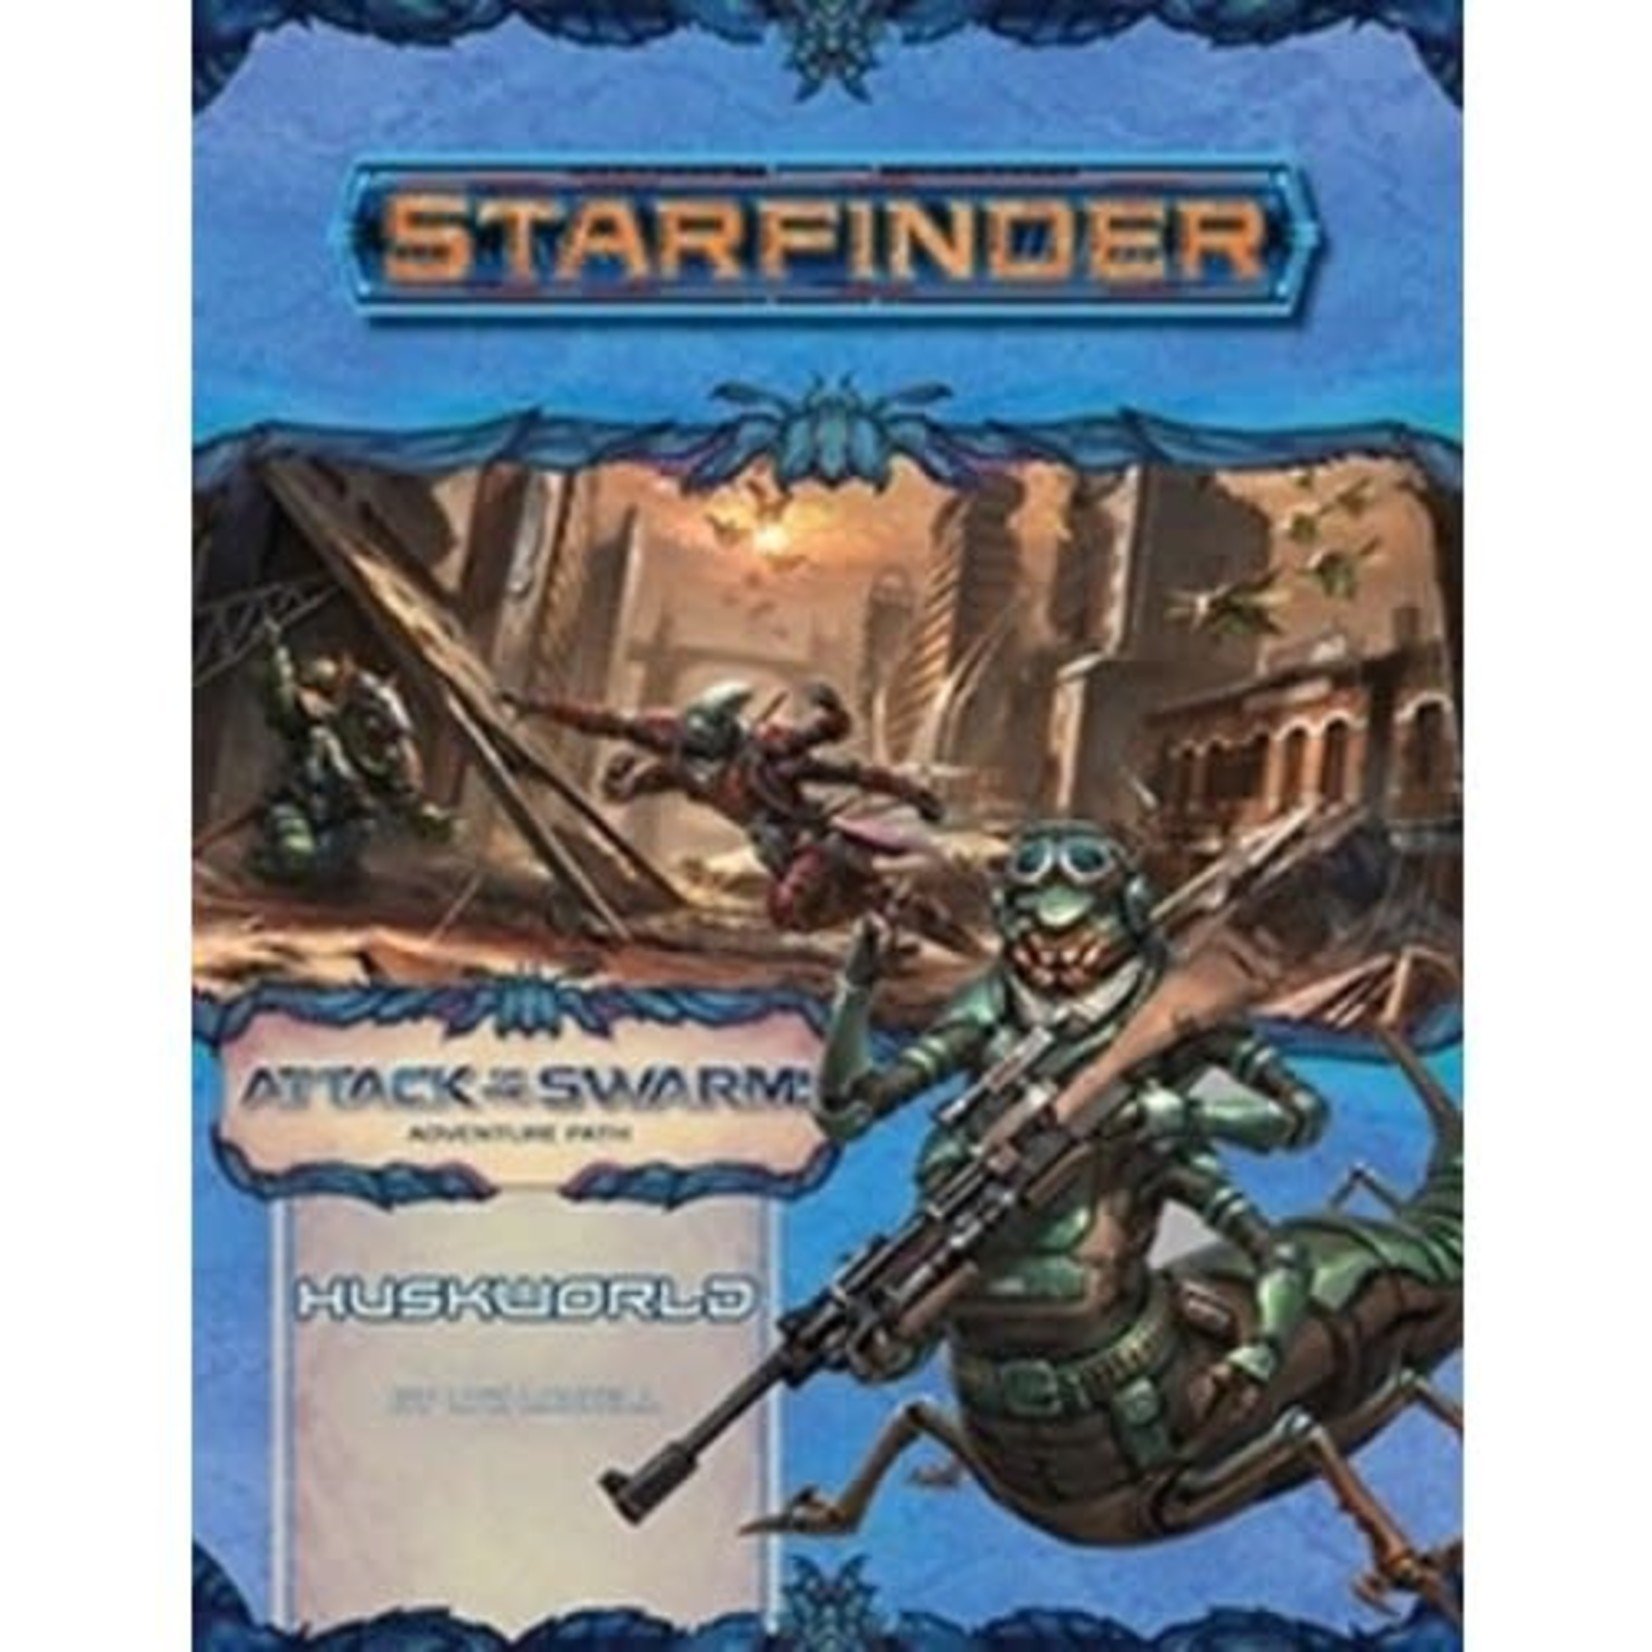 Starfinder Adventure Path #21: Attack of the Swarm - Huskworld